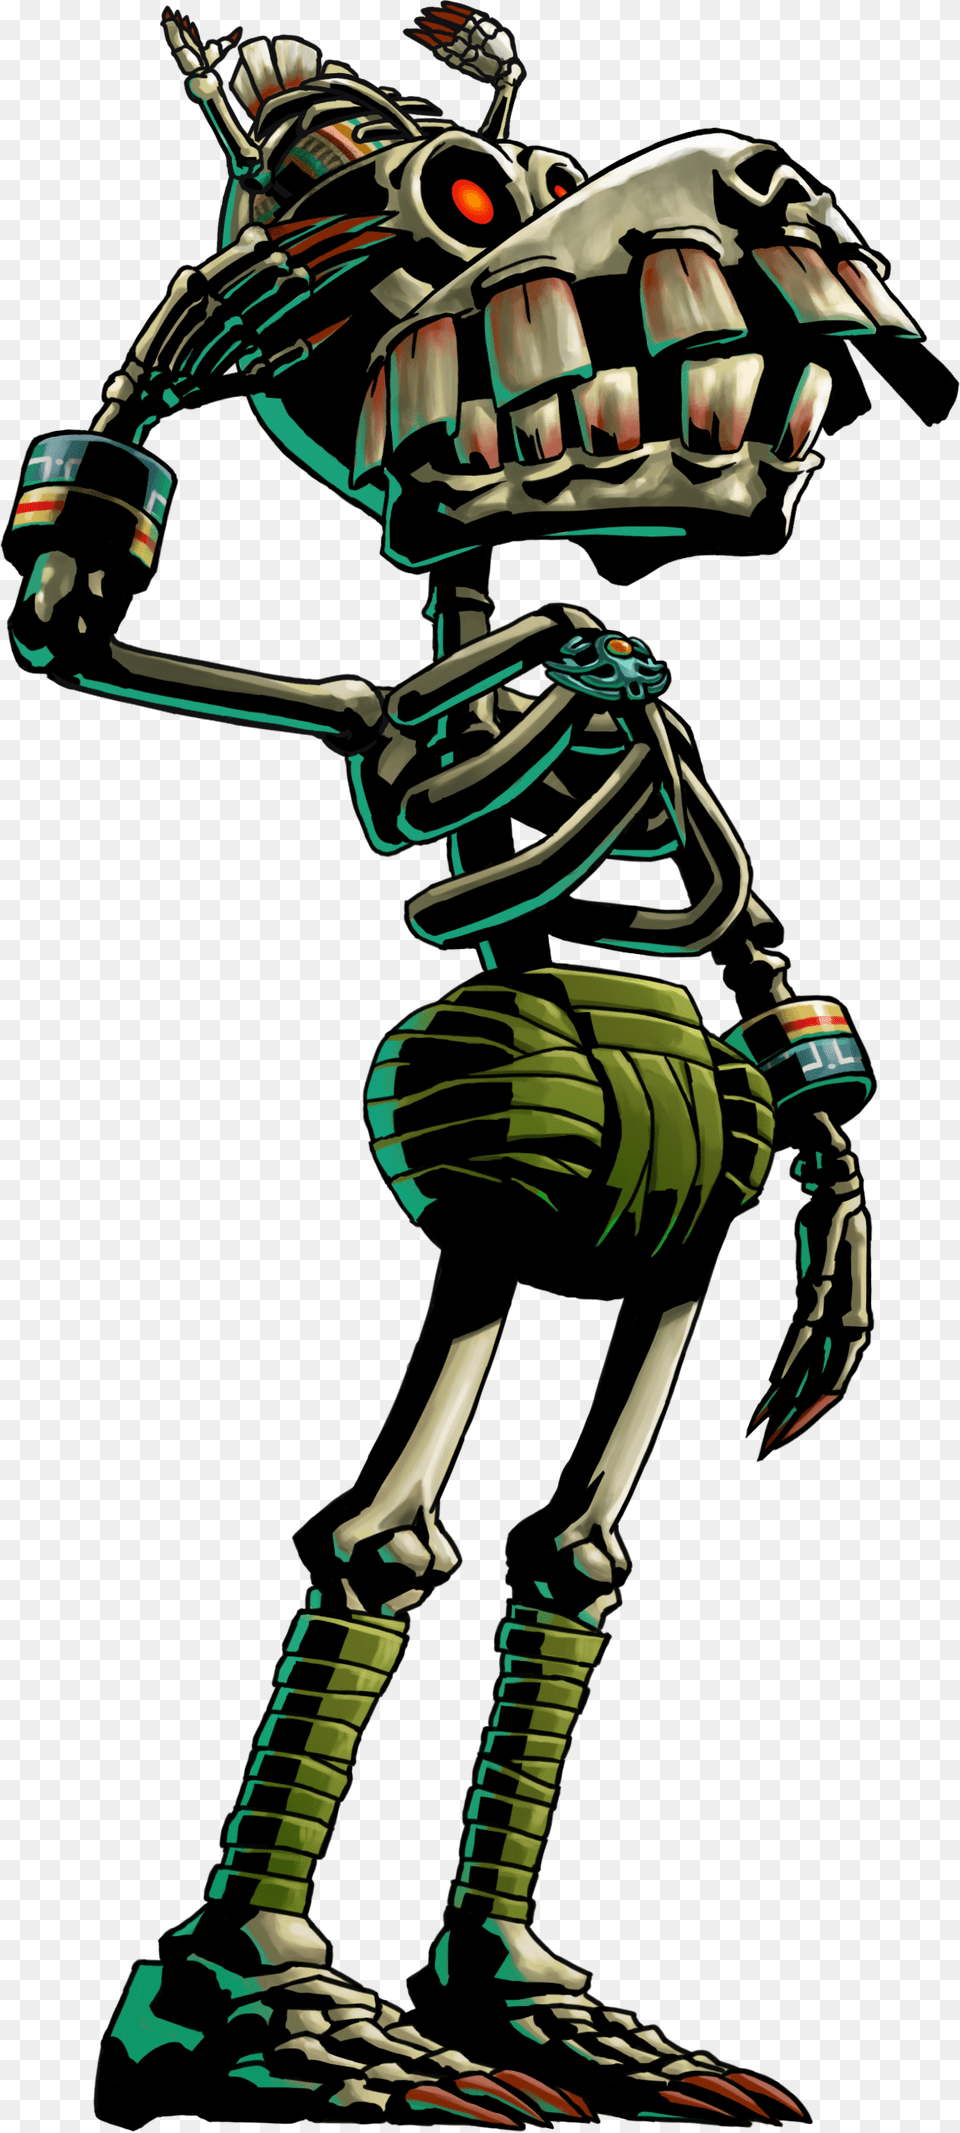 Transparent Skull Kid Legend Of Zelda Majora39s Mask Artwork, Robot, Person Png Image